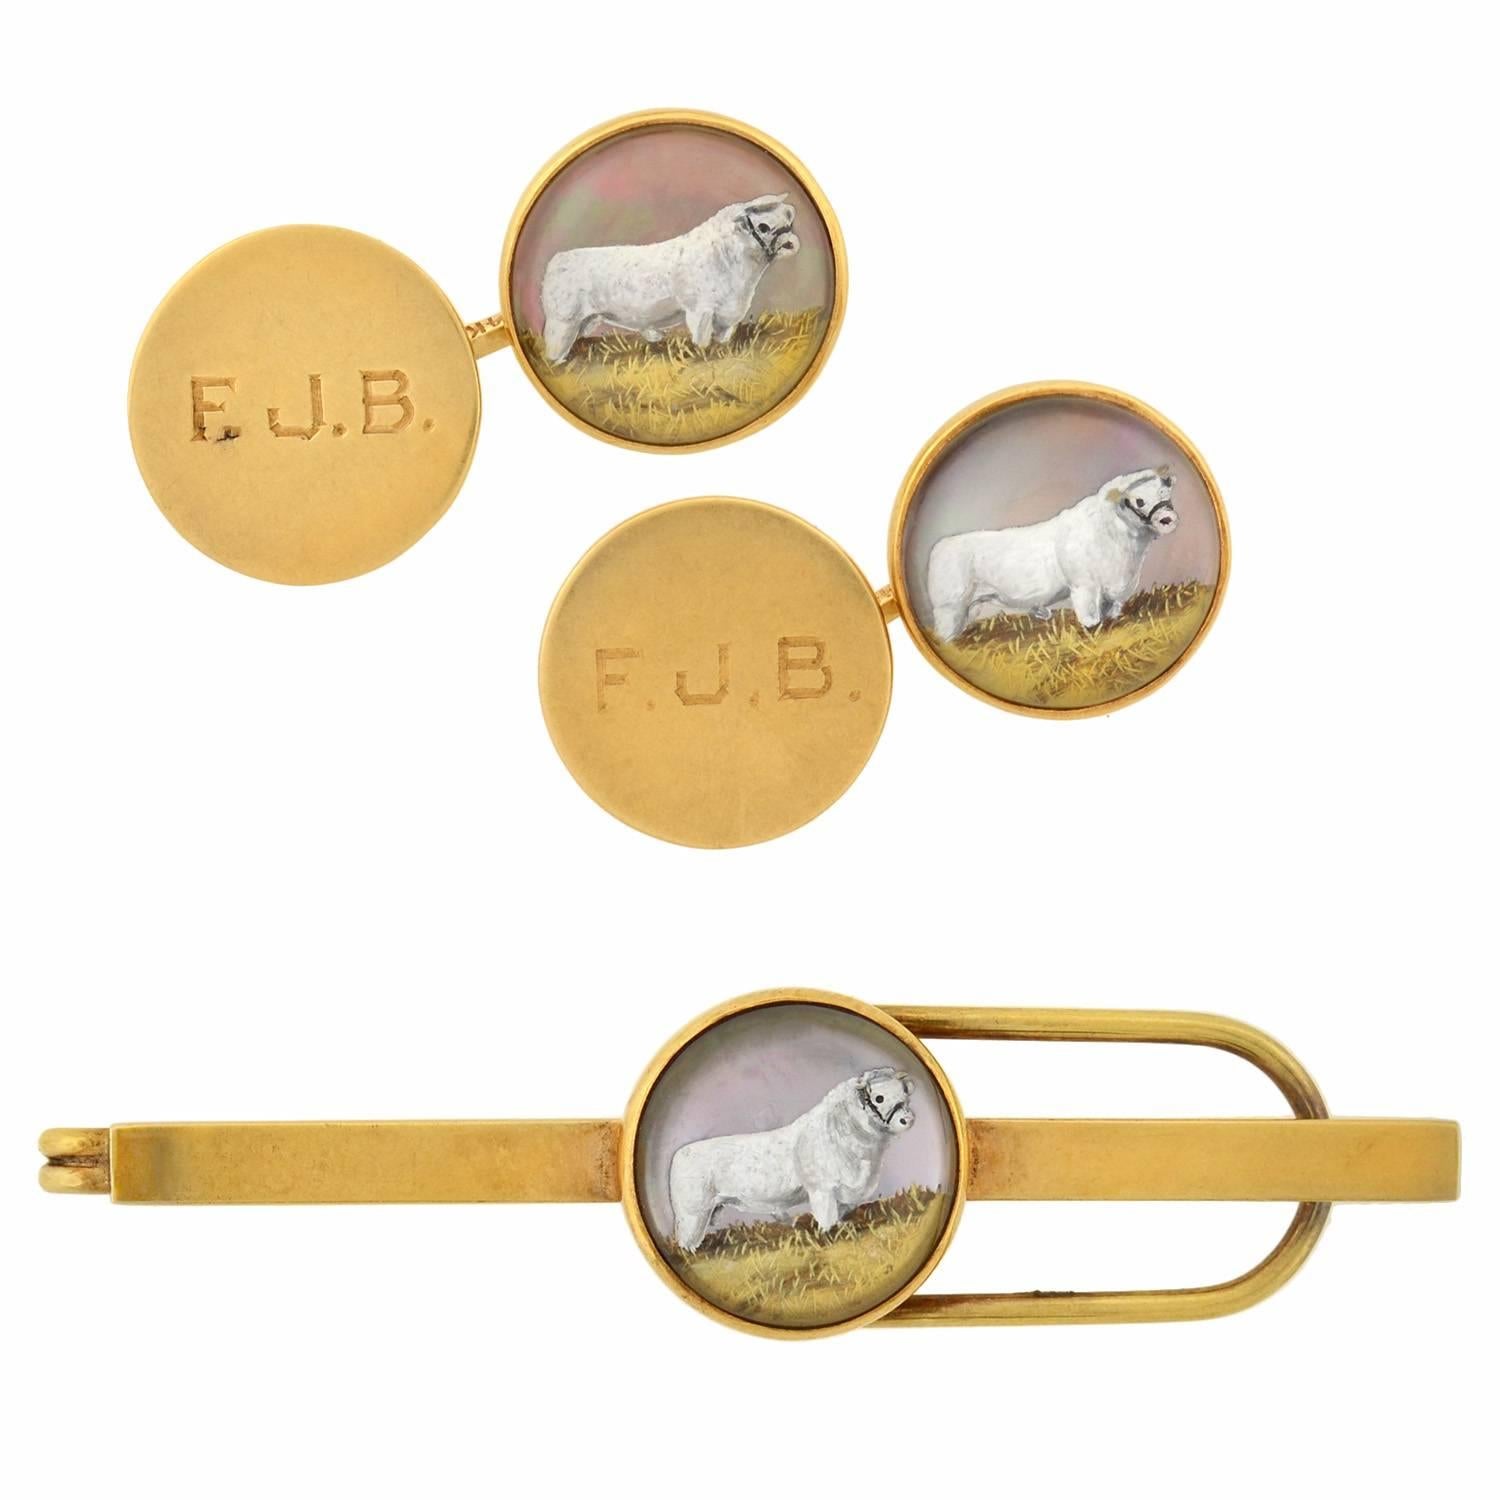 Antique Victorian Essex Crystal Gold Shorthorn Bull Cufflink Tie Clip Set